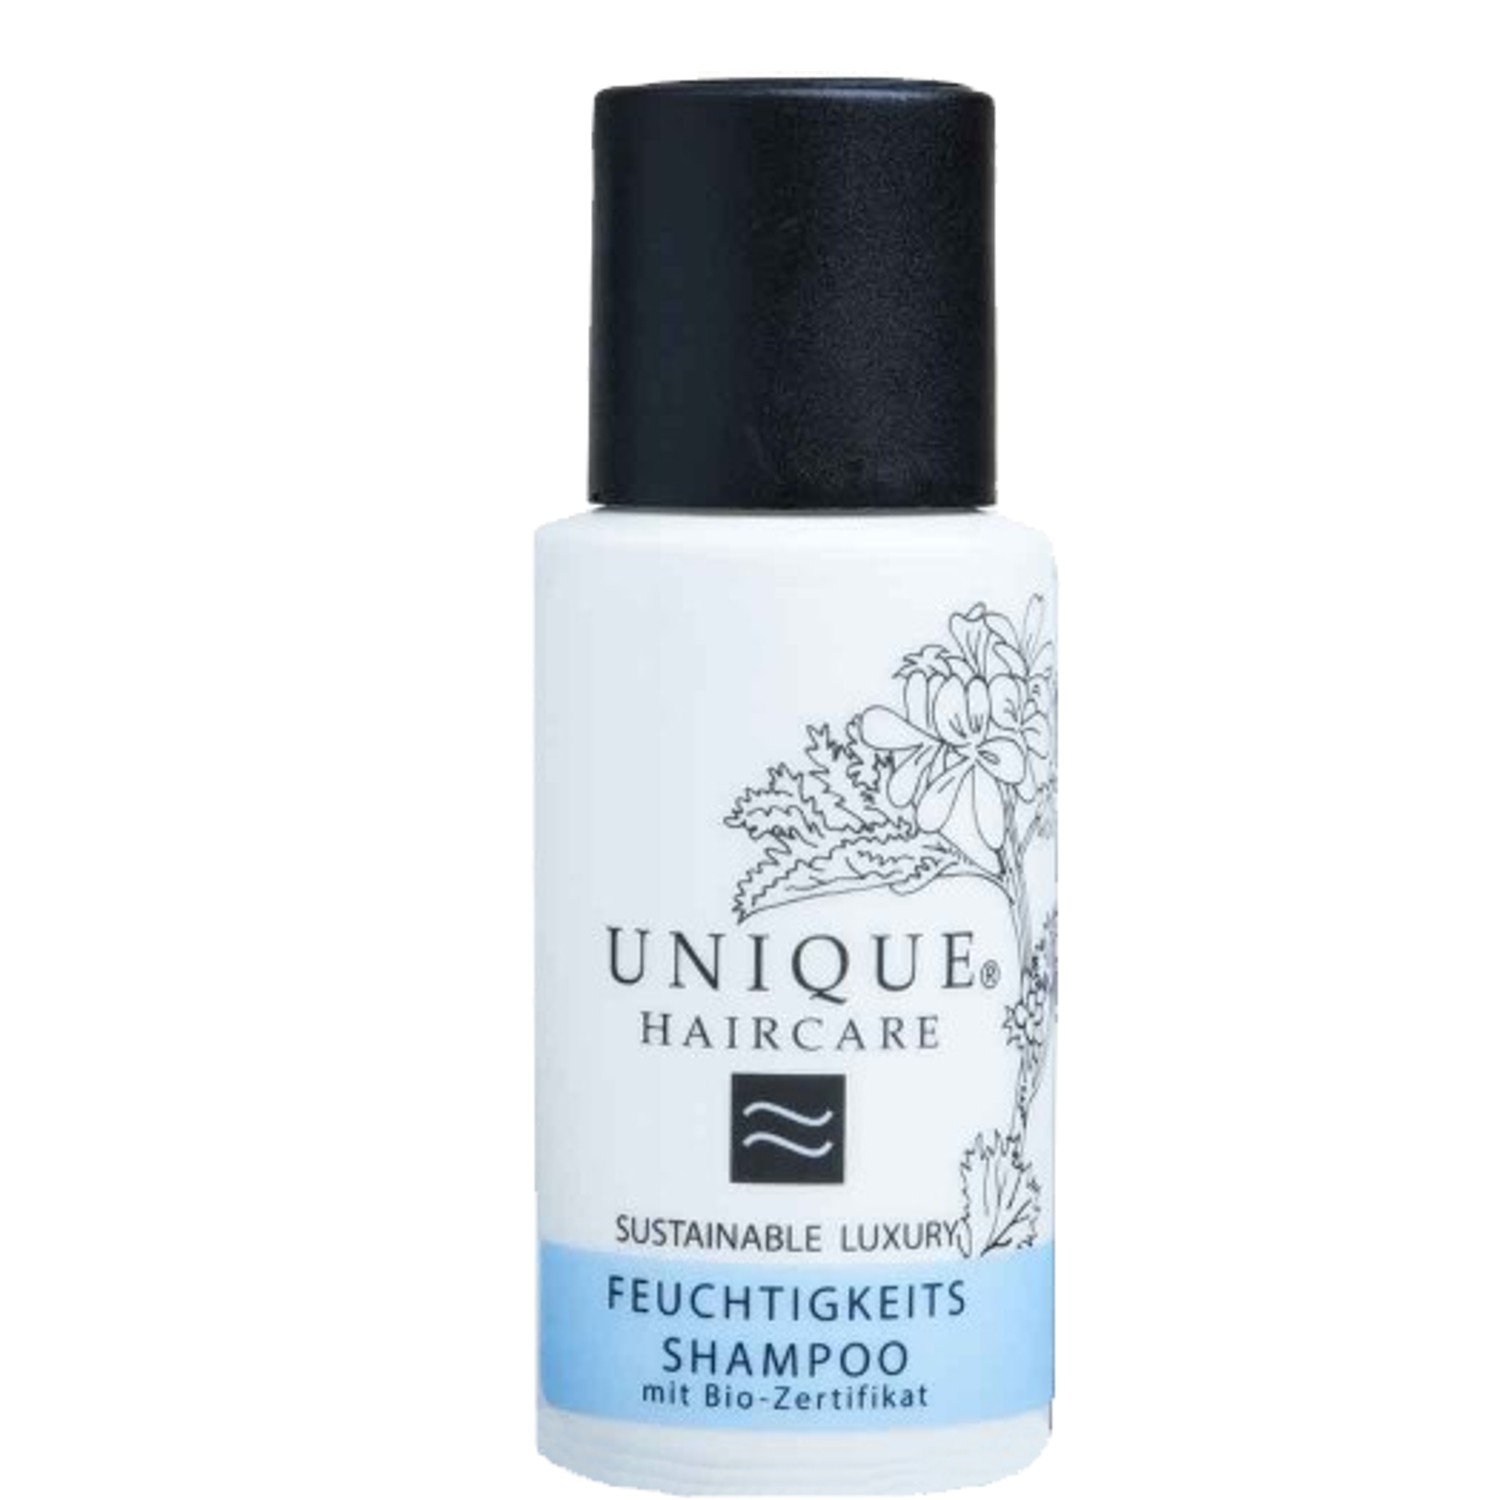 UNIQUE Haircare Feuchtigkeits Shampoo 50 ml